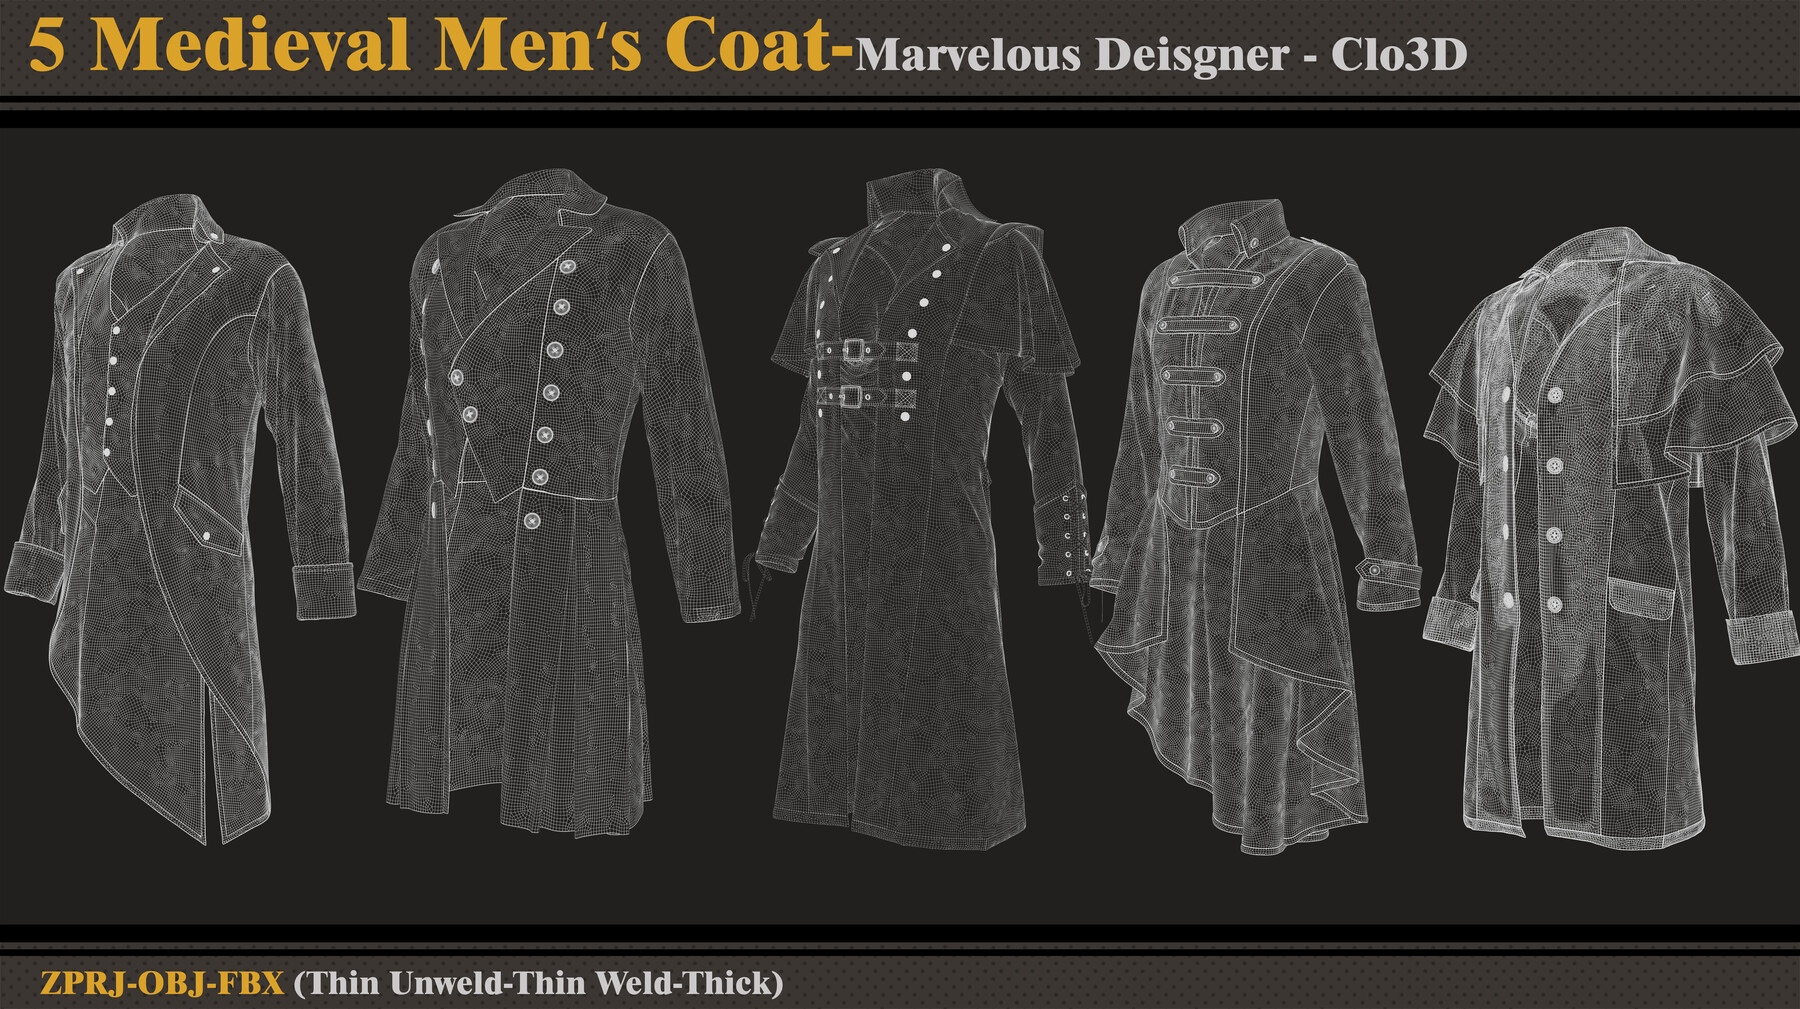 ArtStation - 5 Medieval Men's Coat/Marvelous Designer-Clo3D(ZPRJ +